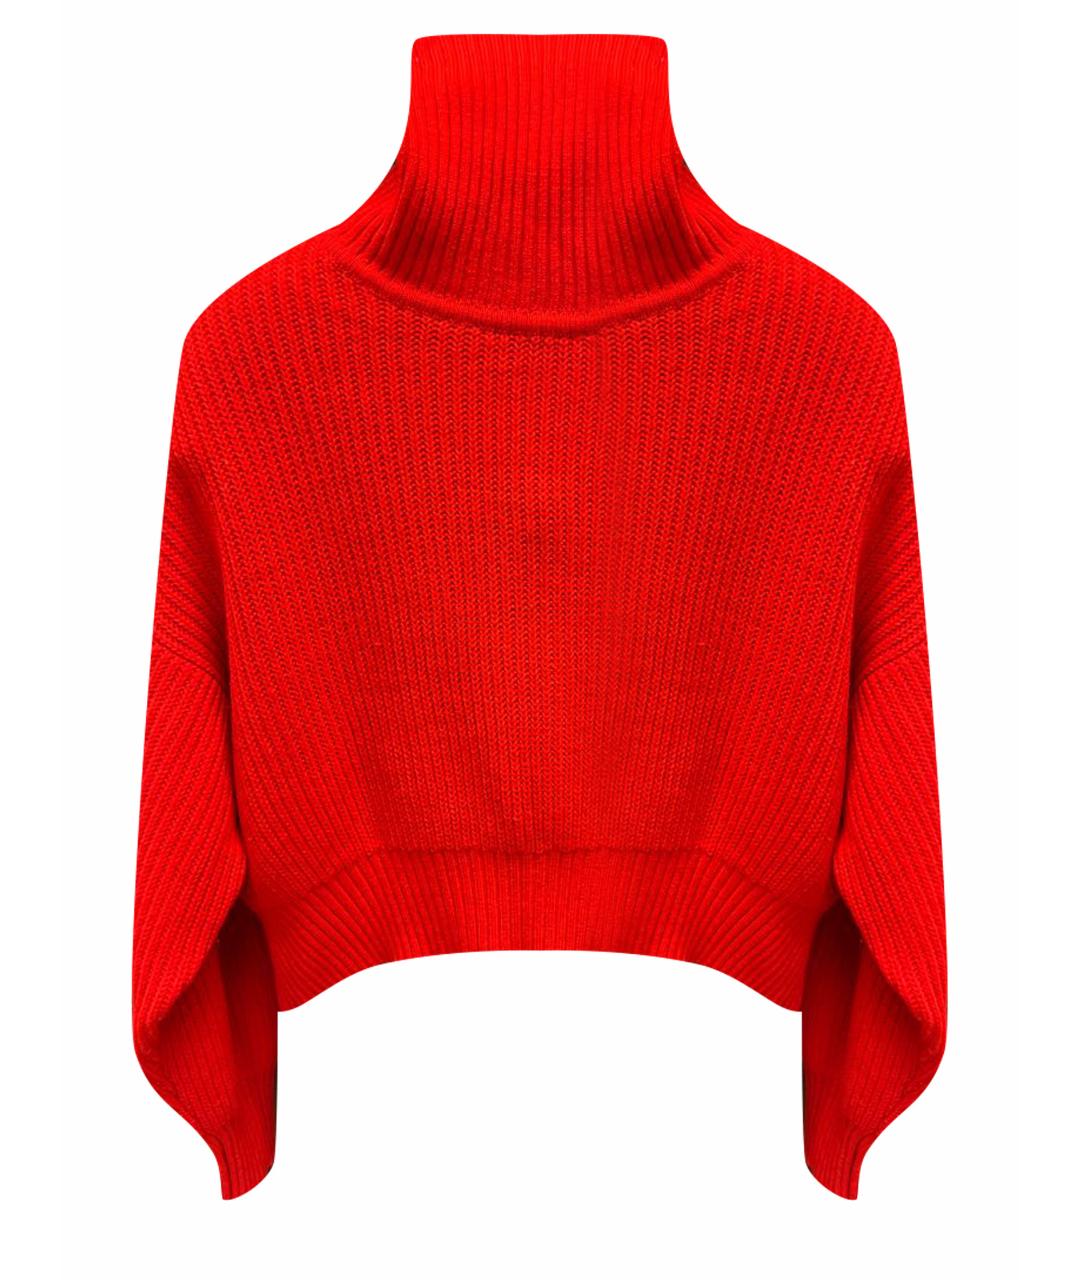 BOHEMIQUE Красный шерстяной джемпер / свитер, фото 1